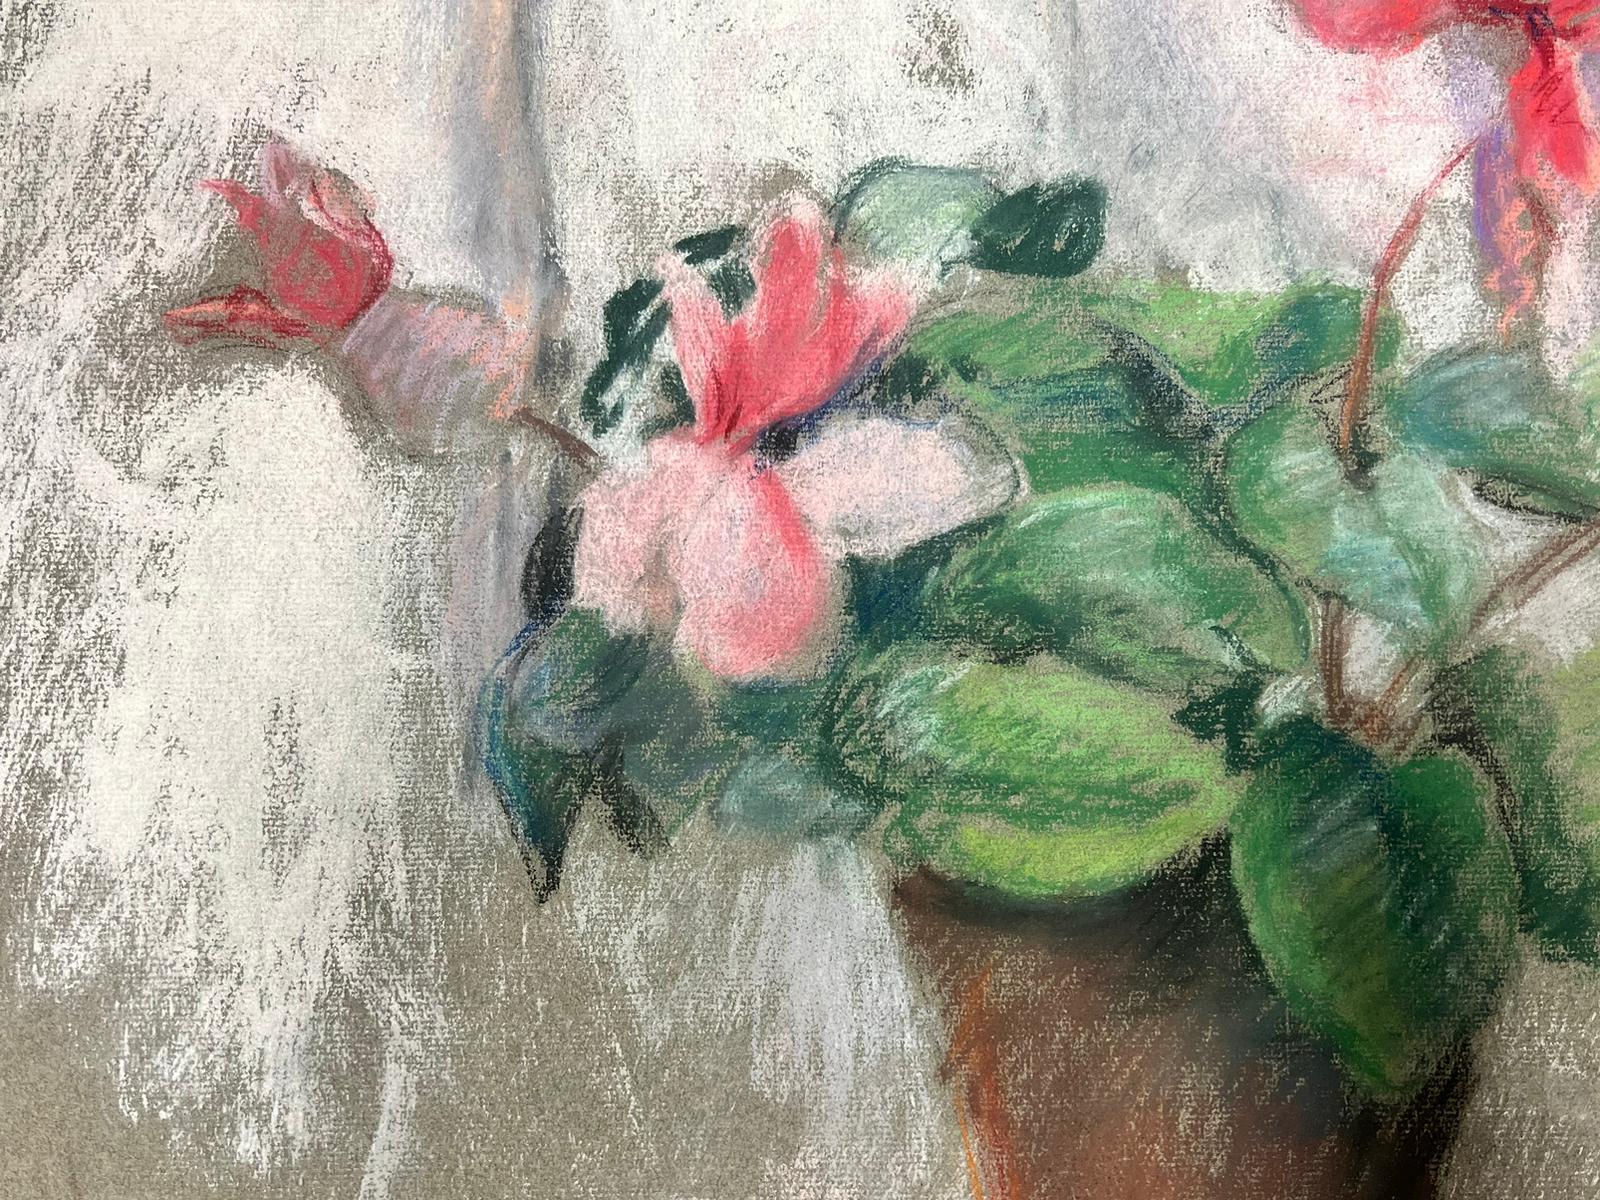 Der Blumentopf
von Josine Vignon (Französisch 1922-2022) 
unterzeichnet
Pastell auf Papier, ungerahmt
Gemälde: 19 x 25 Zoll
guter Zustand
Herkunft: aus dem Nachlass des Künstlers, Frankreich

Josine Vignon (1922-2022) war eine französische